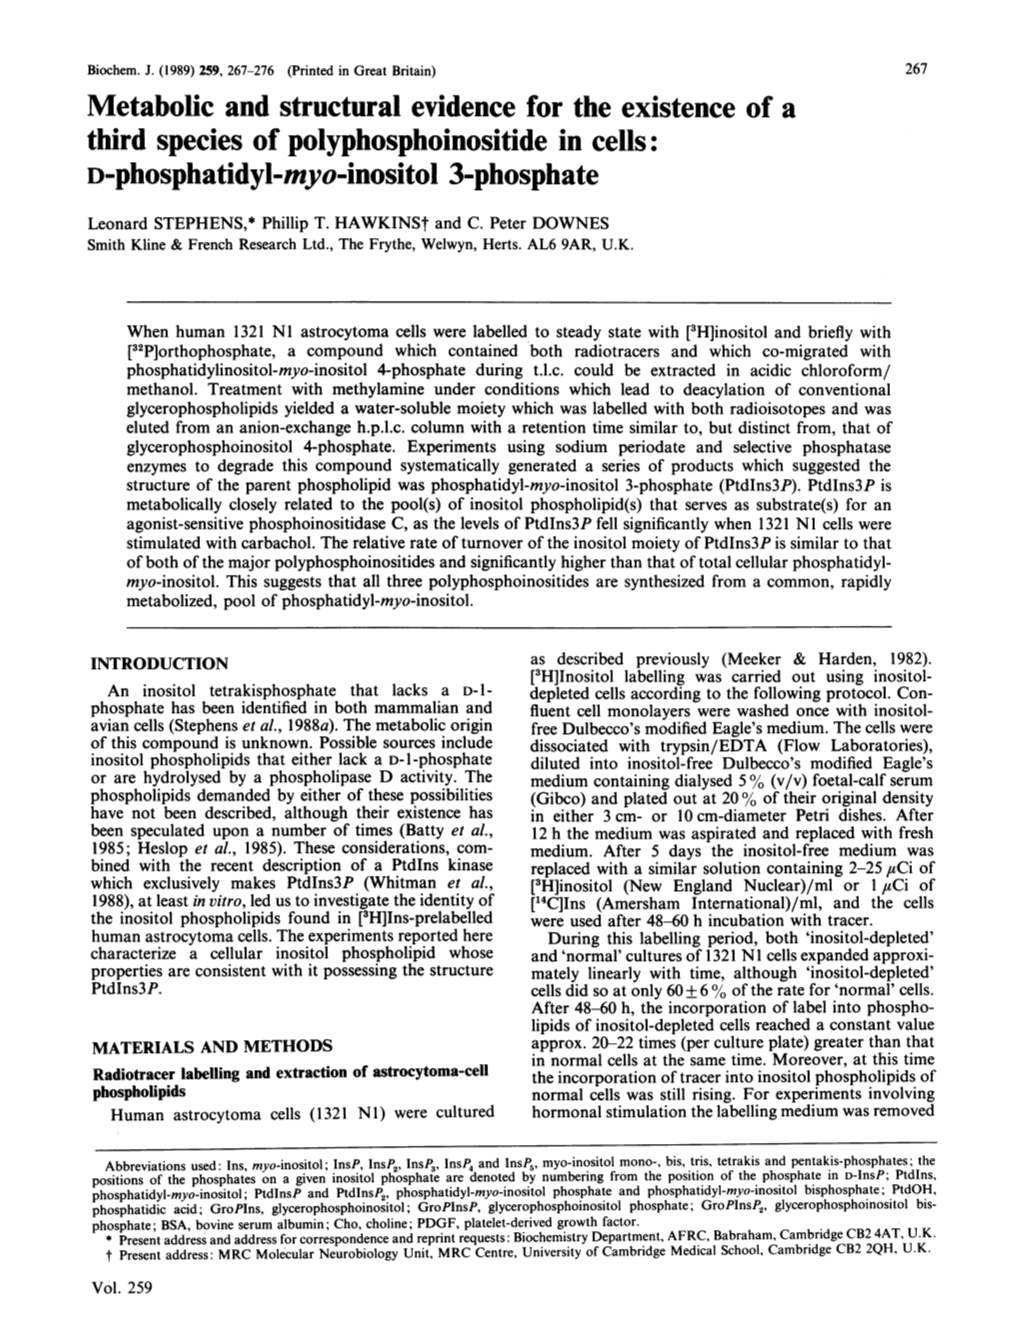 D-Phosphatidyl-Myo-Inositol 3-Phosphate